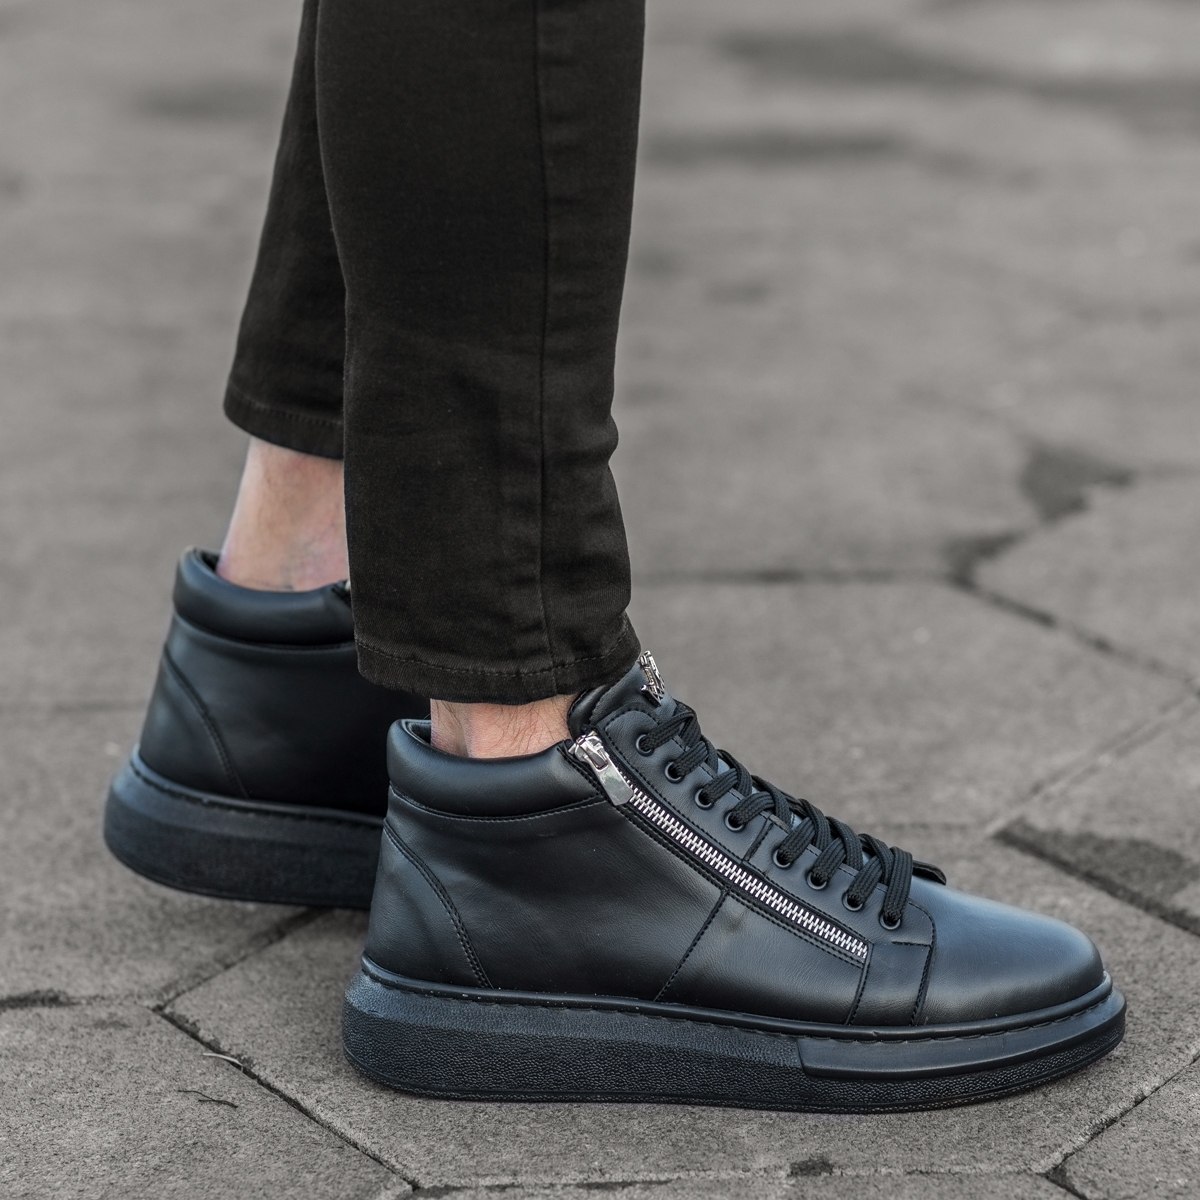 Herren High Top Sneakers Designer Schuhe mit Reissverschluss in schwarz - 2